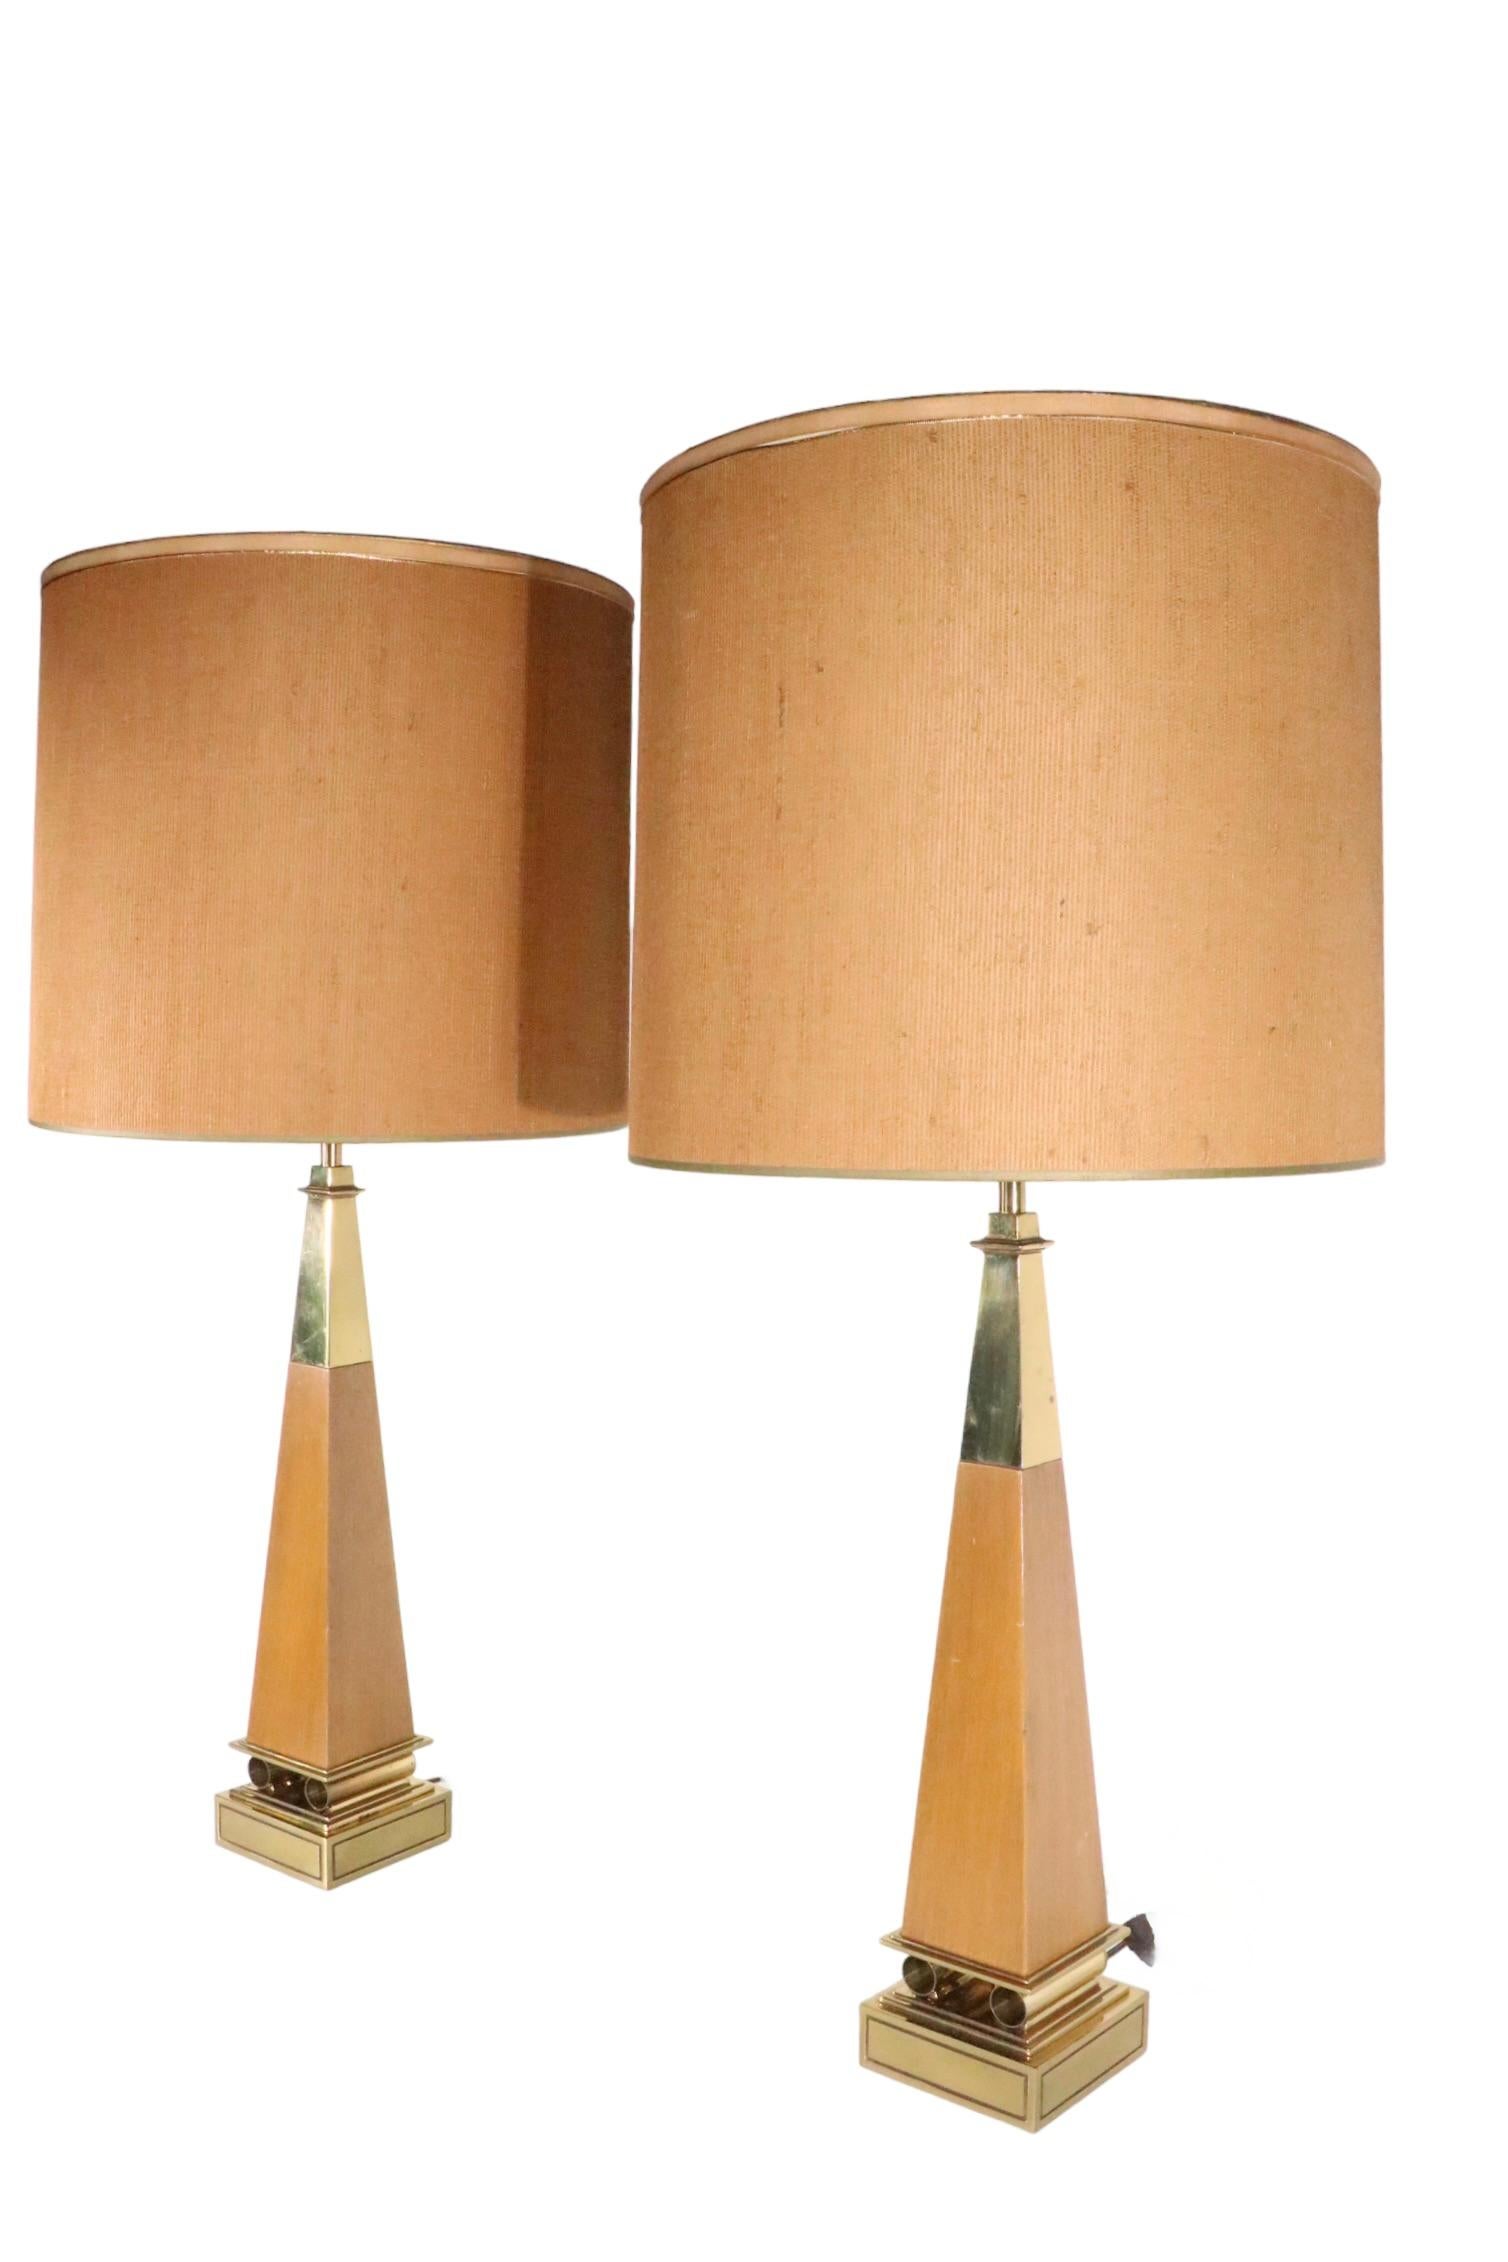 Merveilleuse paire de lampes de table en forme d'obélisque fabriquées par Stiffel, design attribué à Tommi Parzinger. Les lampes sont toutes deux en très bon état, d'origine, propres et fonctionnelles, ne présentant qu'une légère usure cosmétique, 